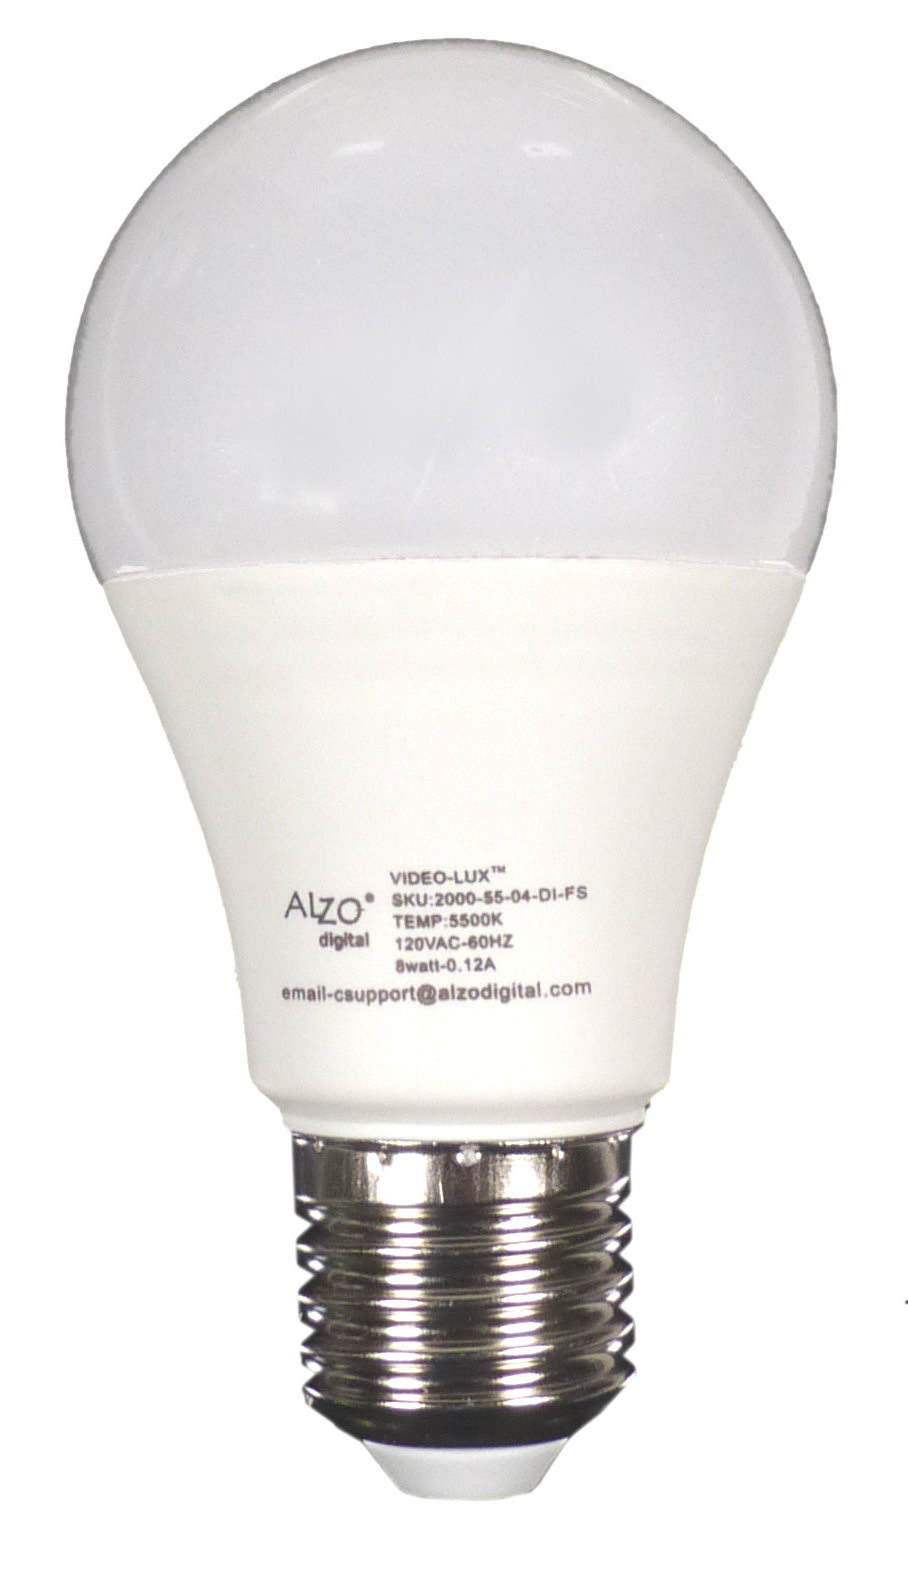 Myre fætter harmonisk ALZO 8W (75W) Joyous Light Dimmable LED Full Spectrum Light Bulb 5500K -  ALZO Digital